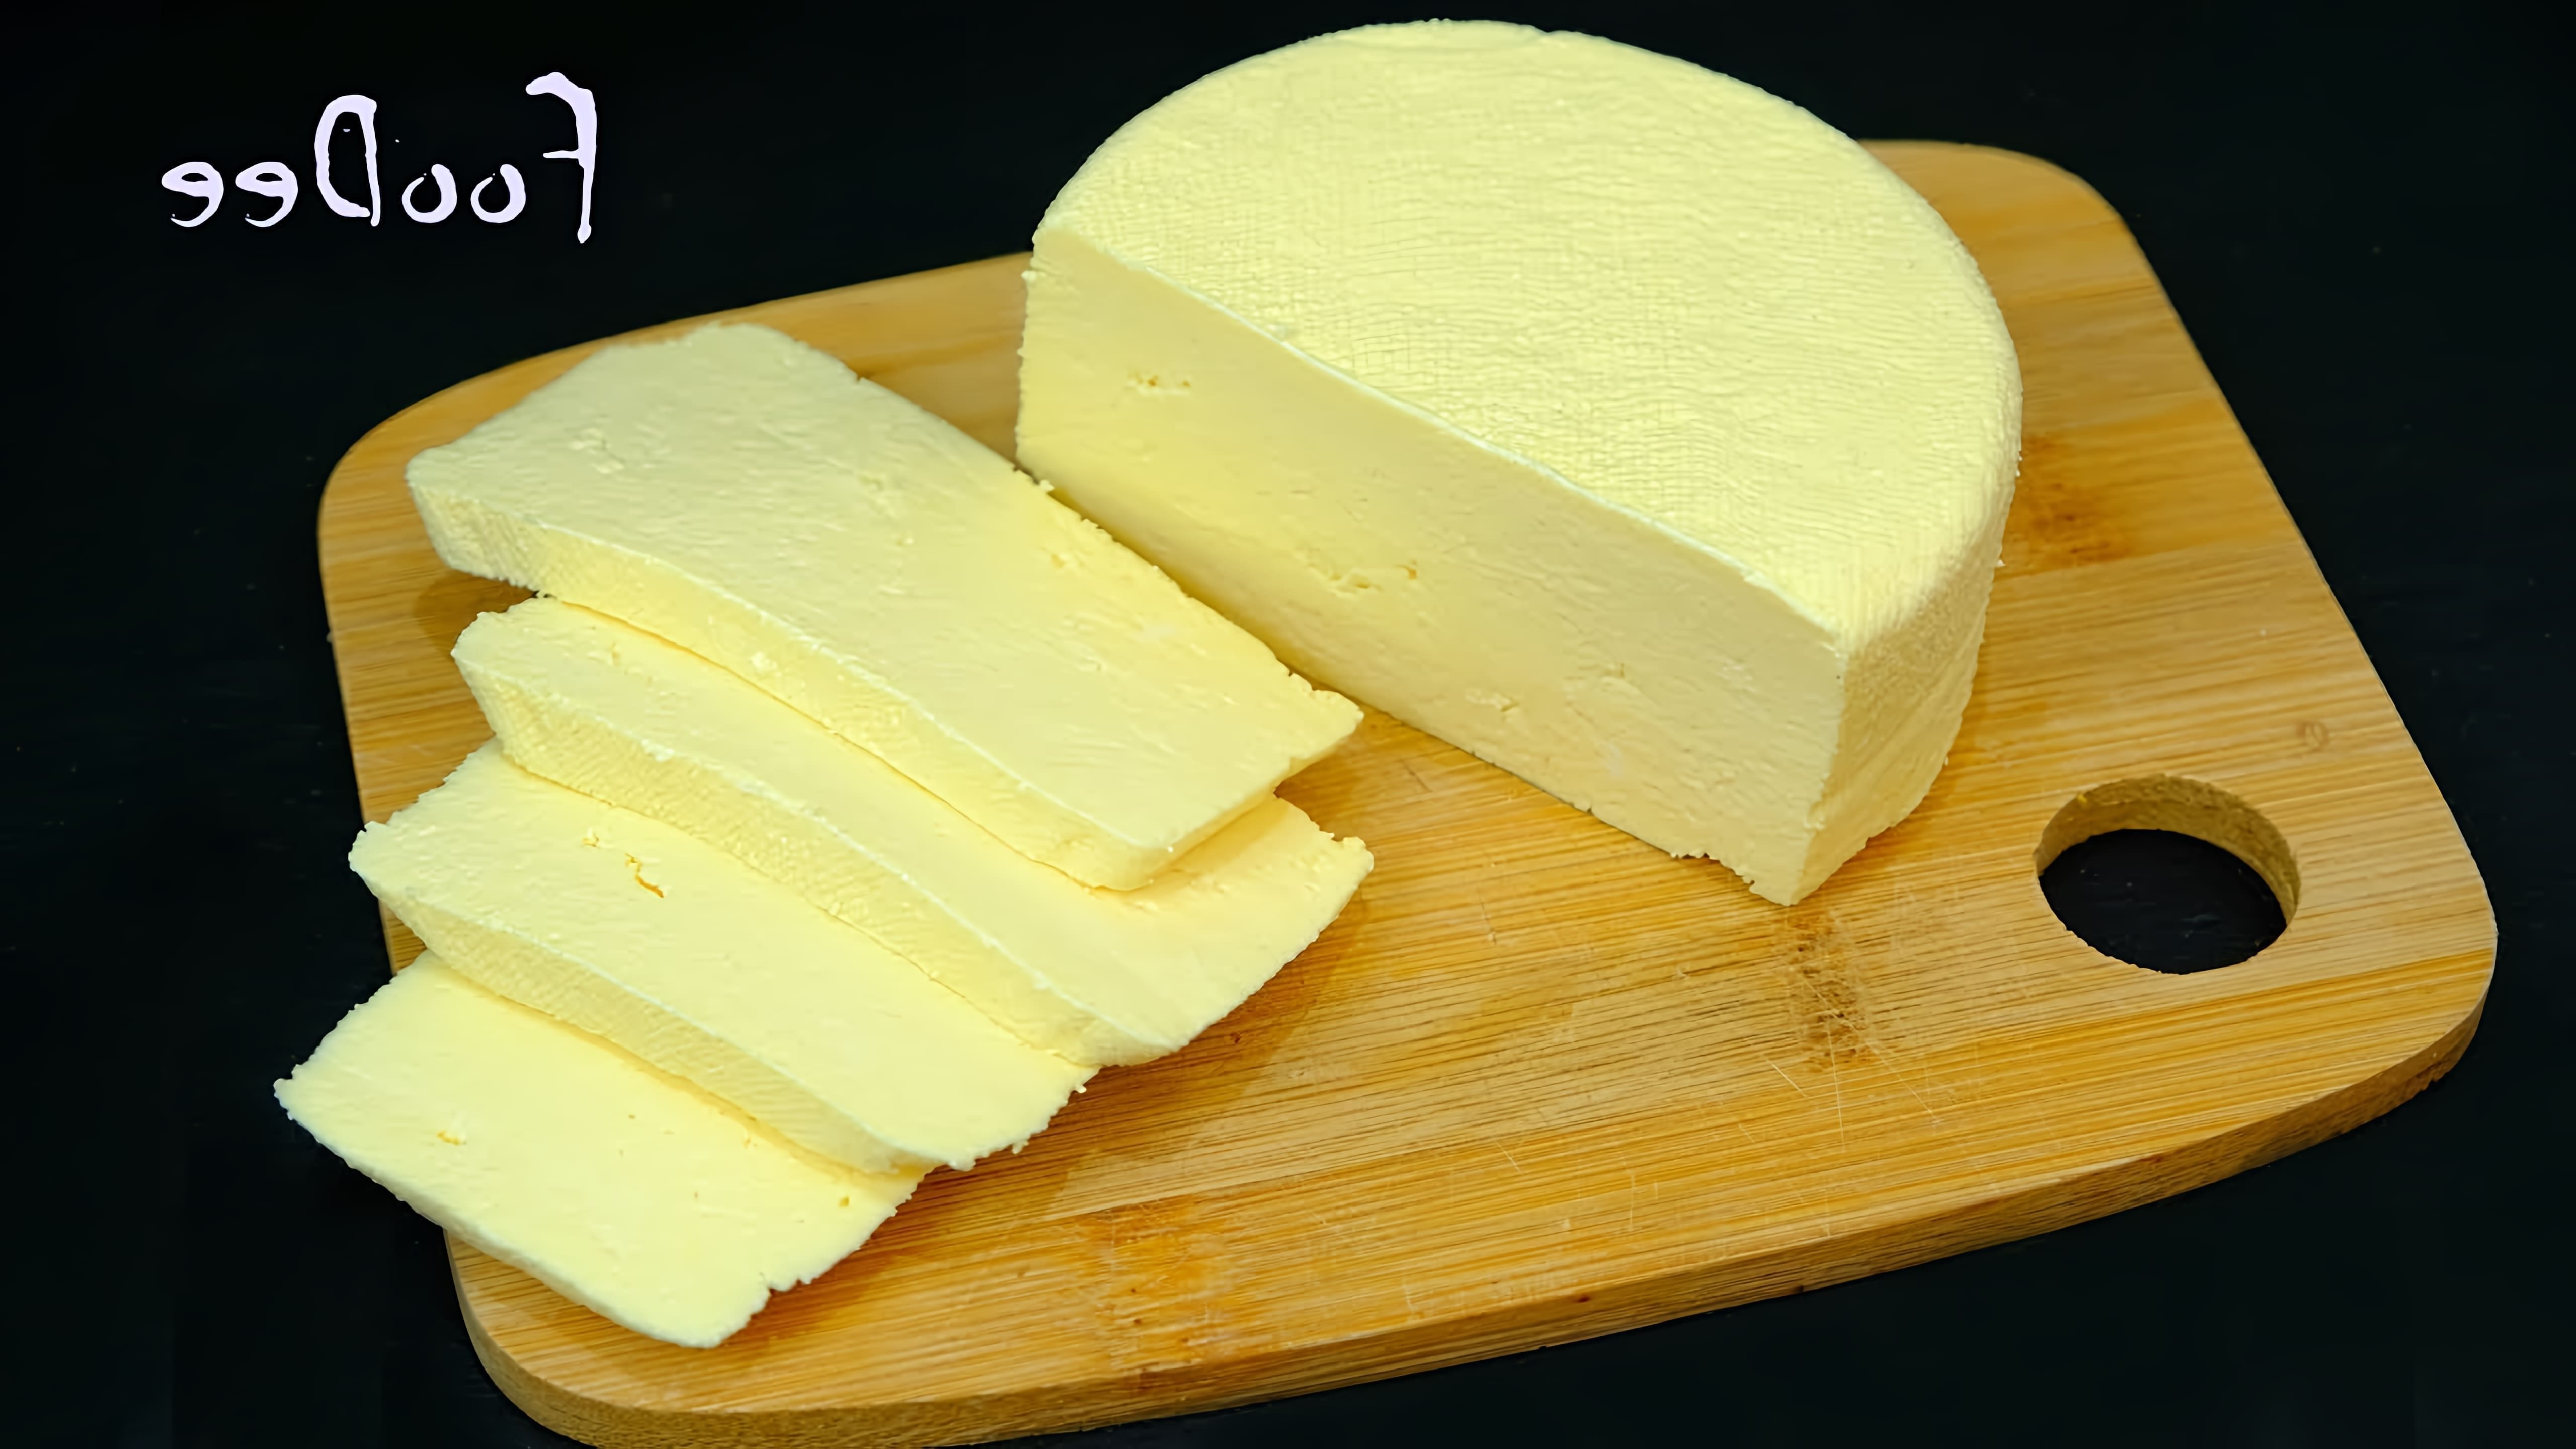 В этом видео демонстрируется простой способ приготовления домашнего сыра из 3 ингредиентов и 10 минут времени